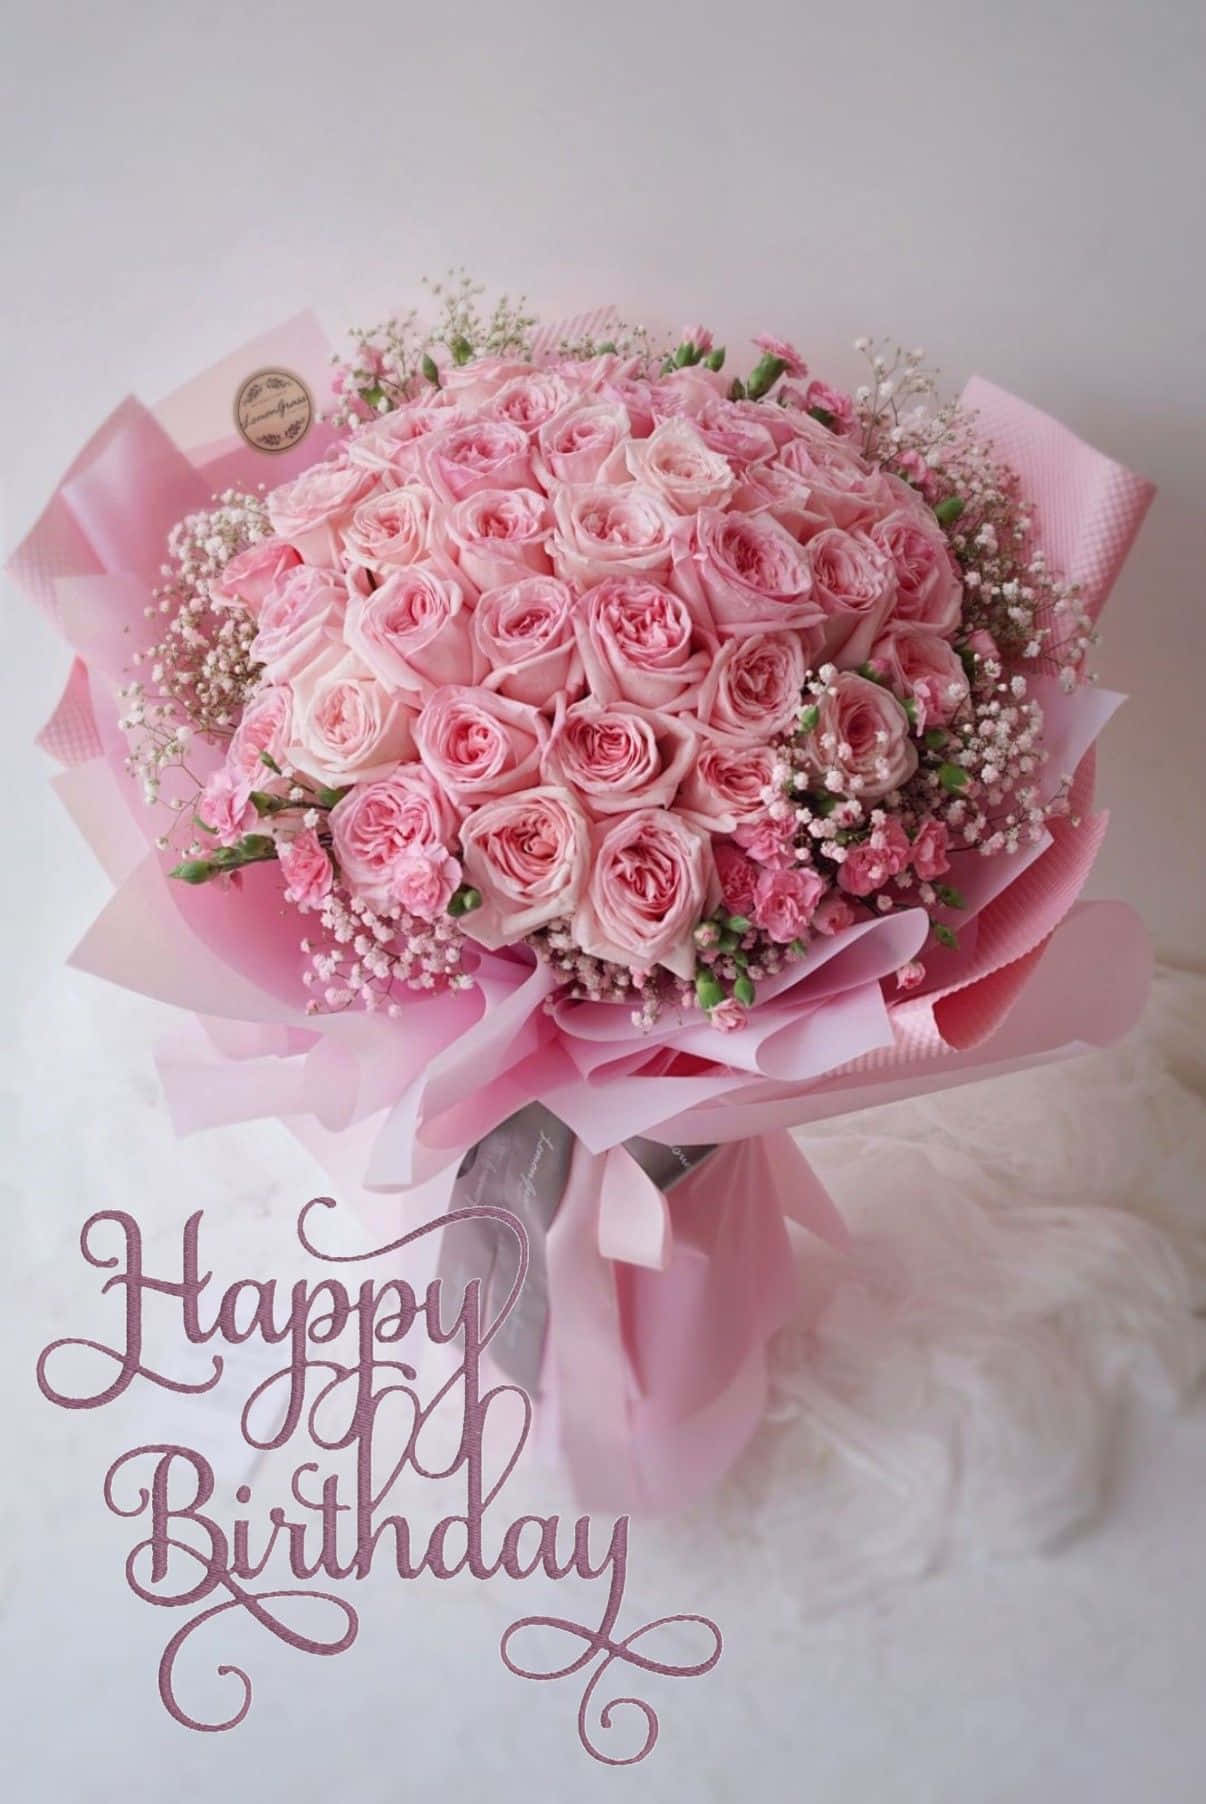 Imagemde Flores Cor-de-rosa De Aniversário.